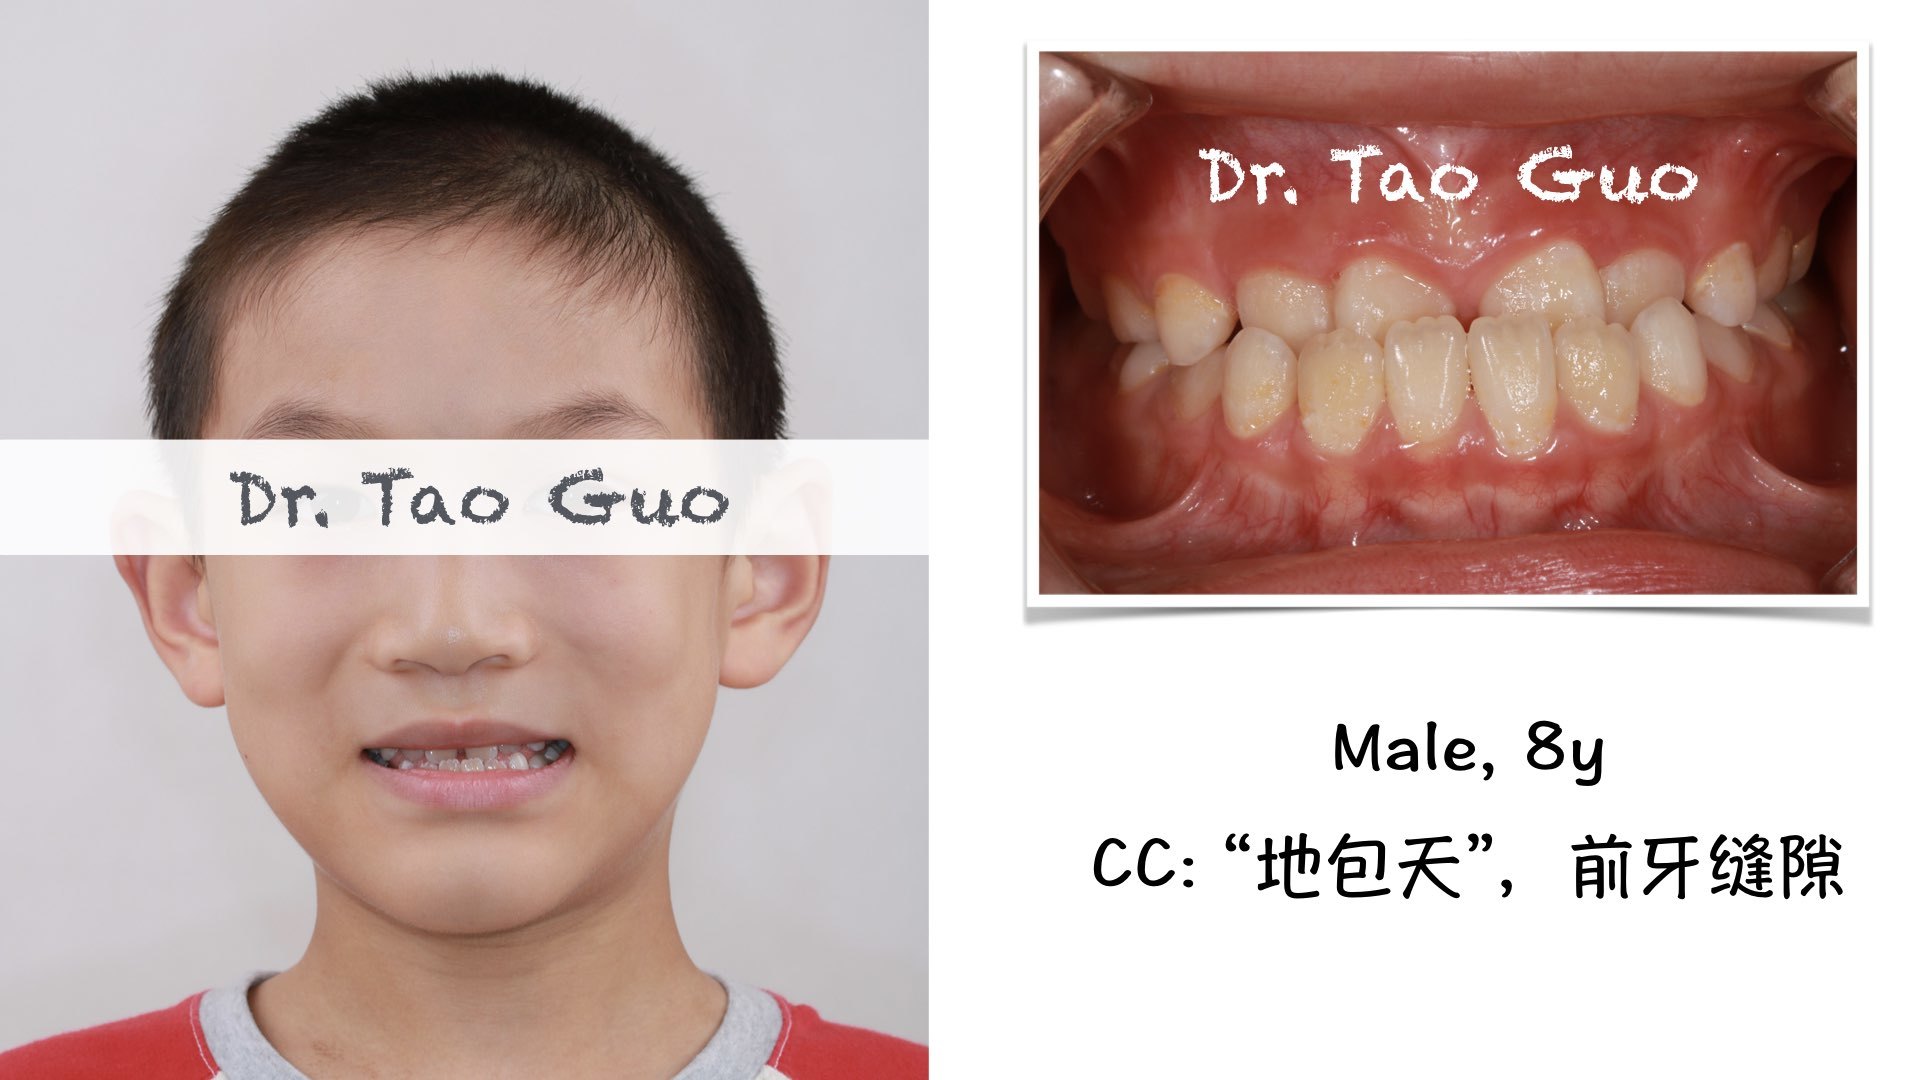 郭涛 文章列表  " 地包天 "是指下前牙盖住了上前牙,与正常上牙盖下牙